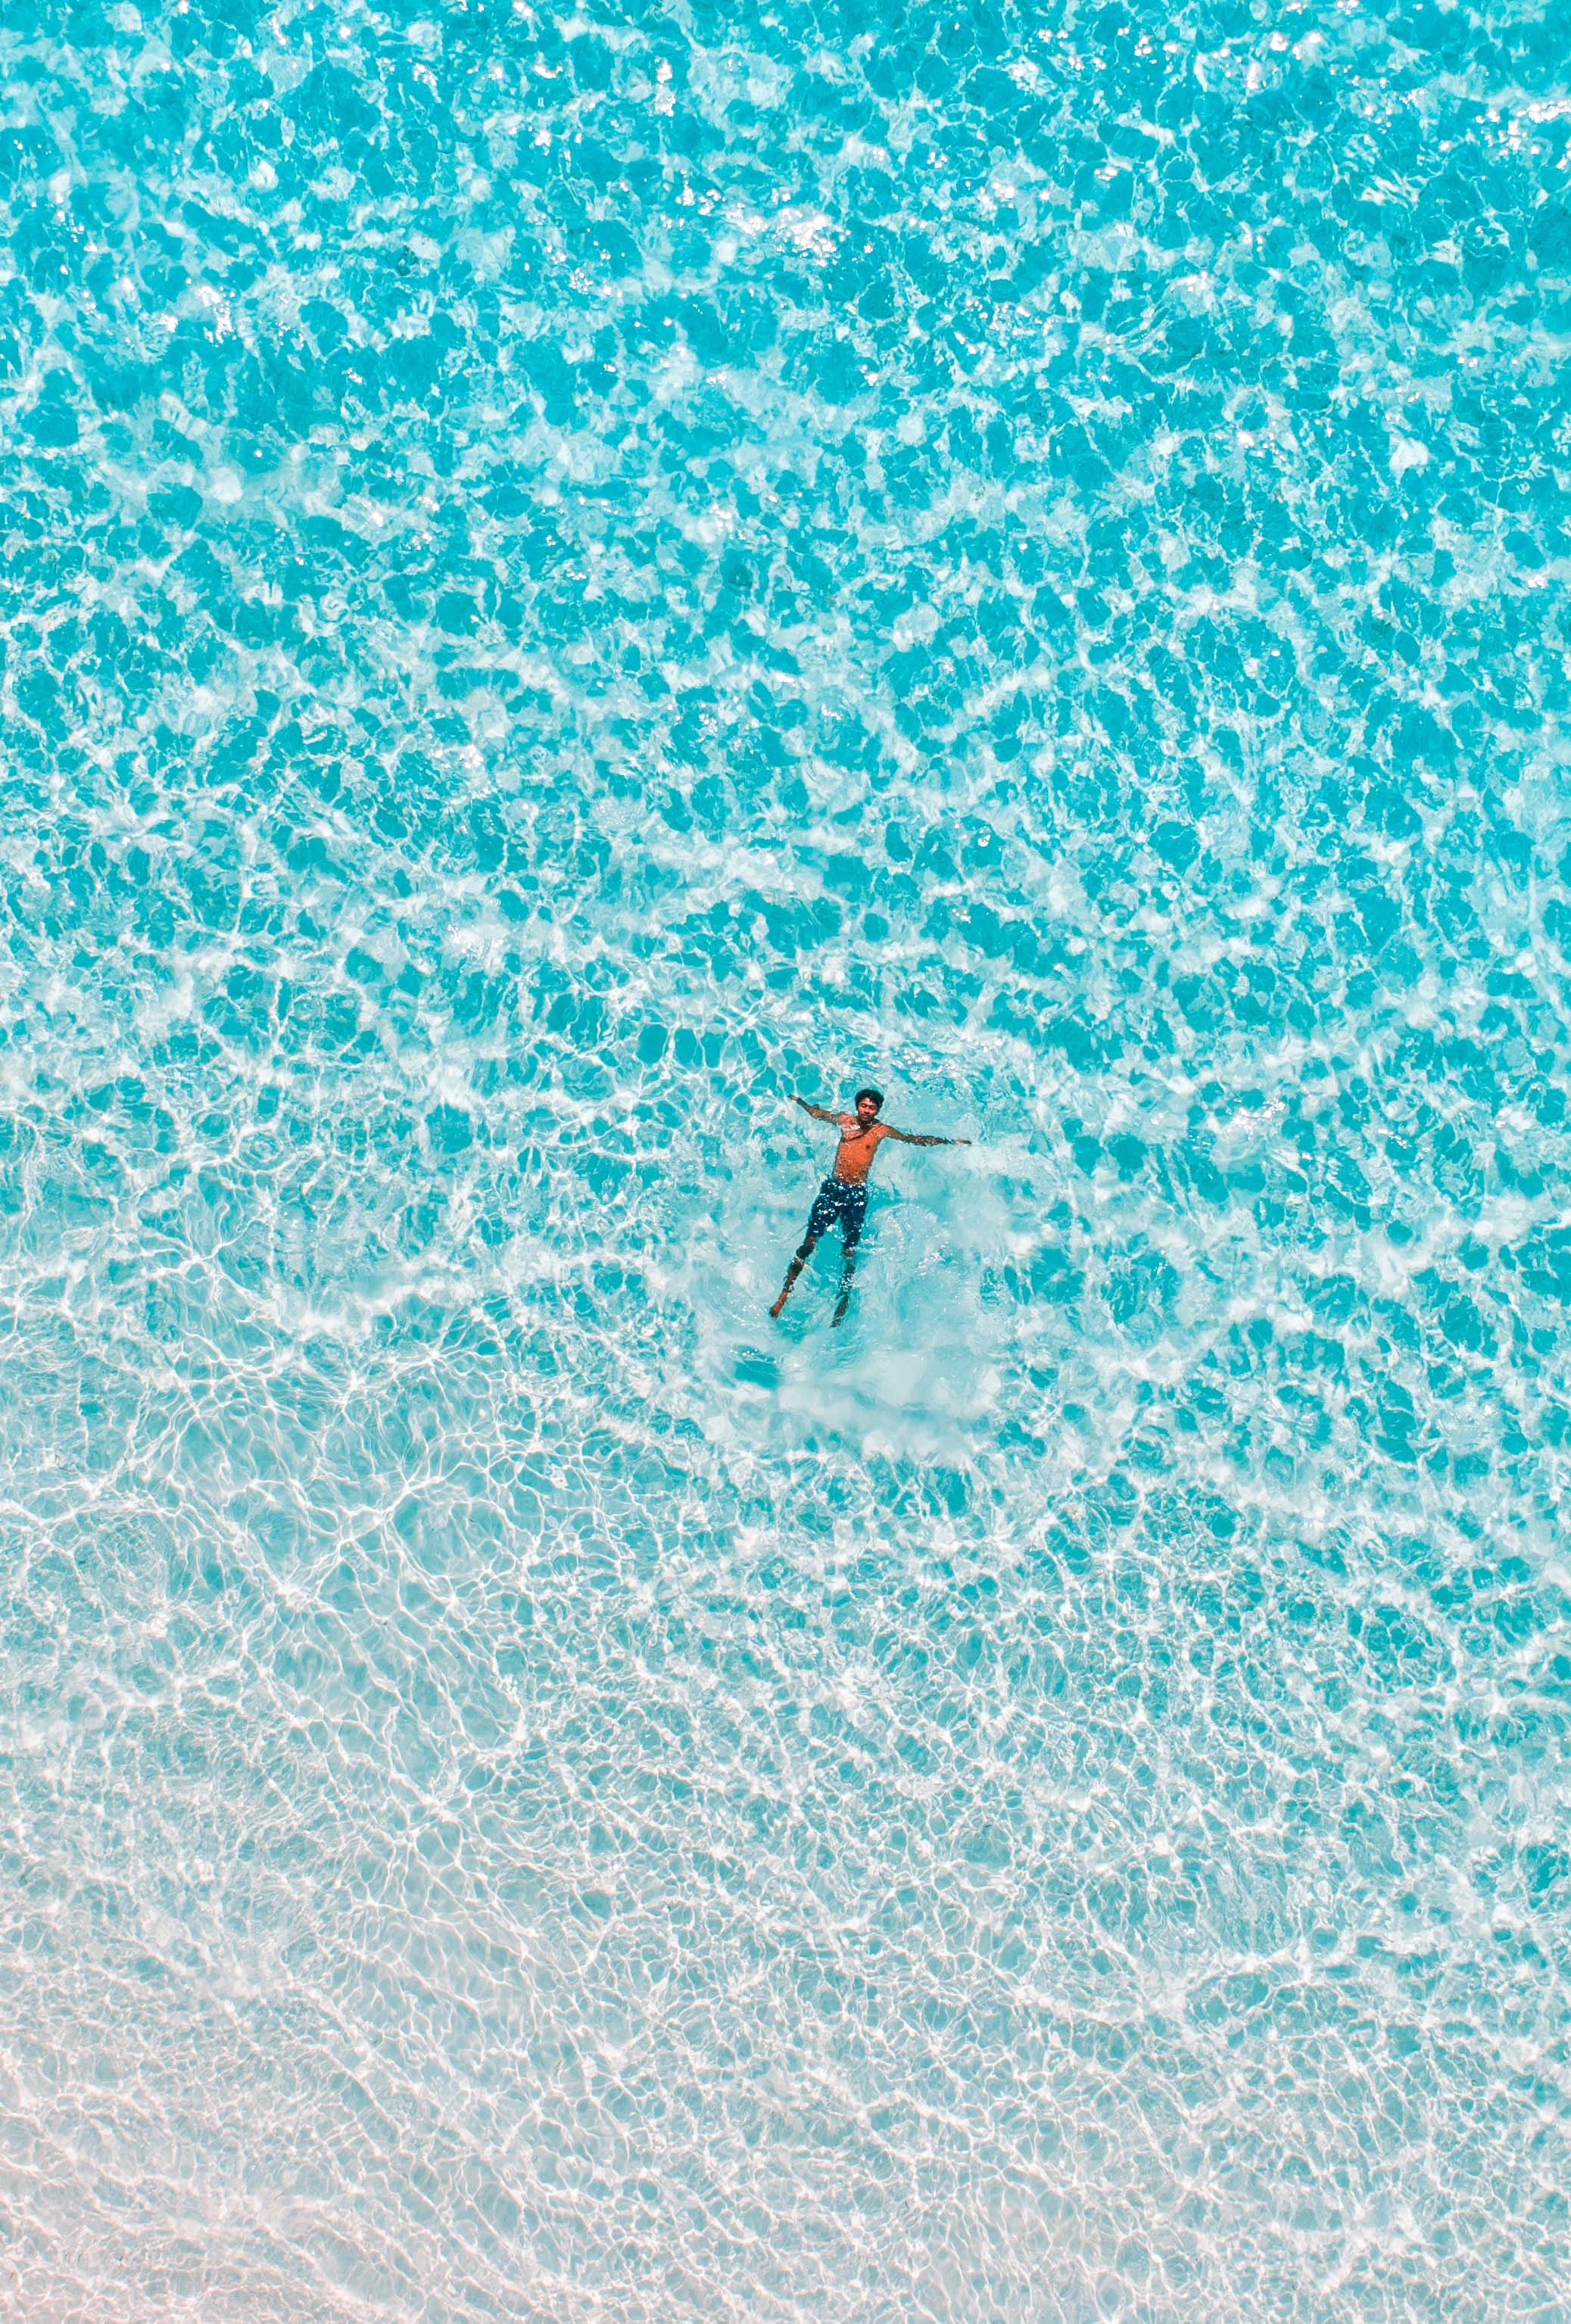 Une petite figure d'une personne entièrement habillée flottant dans un océan tranquille.